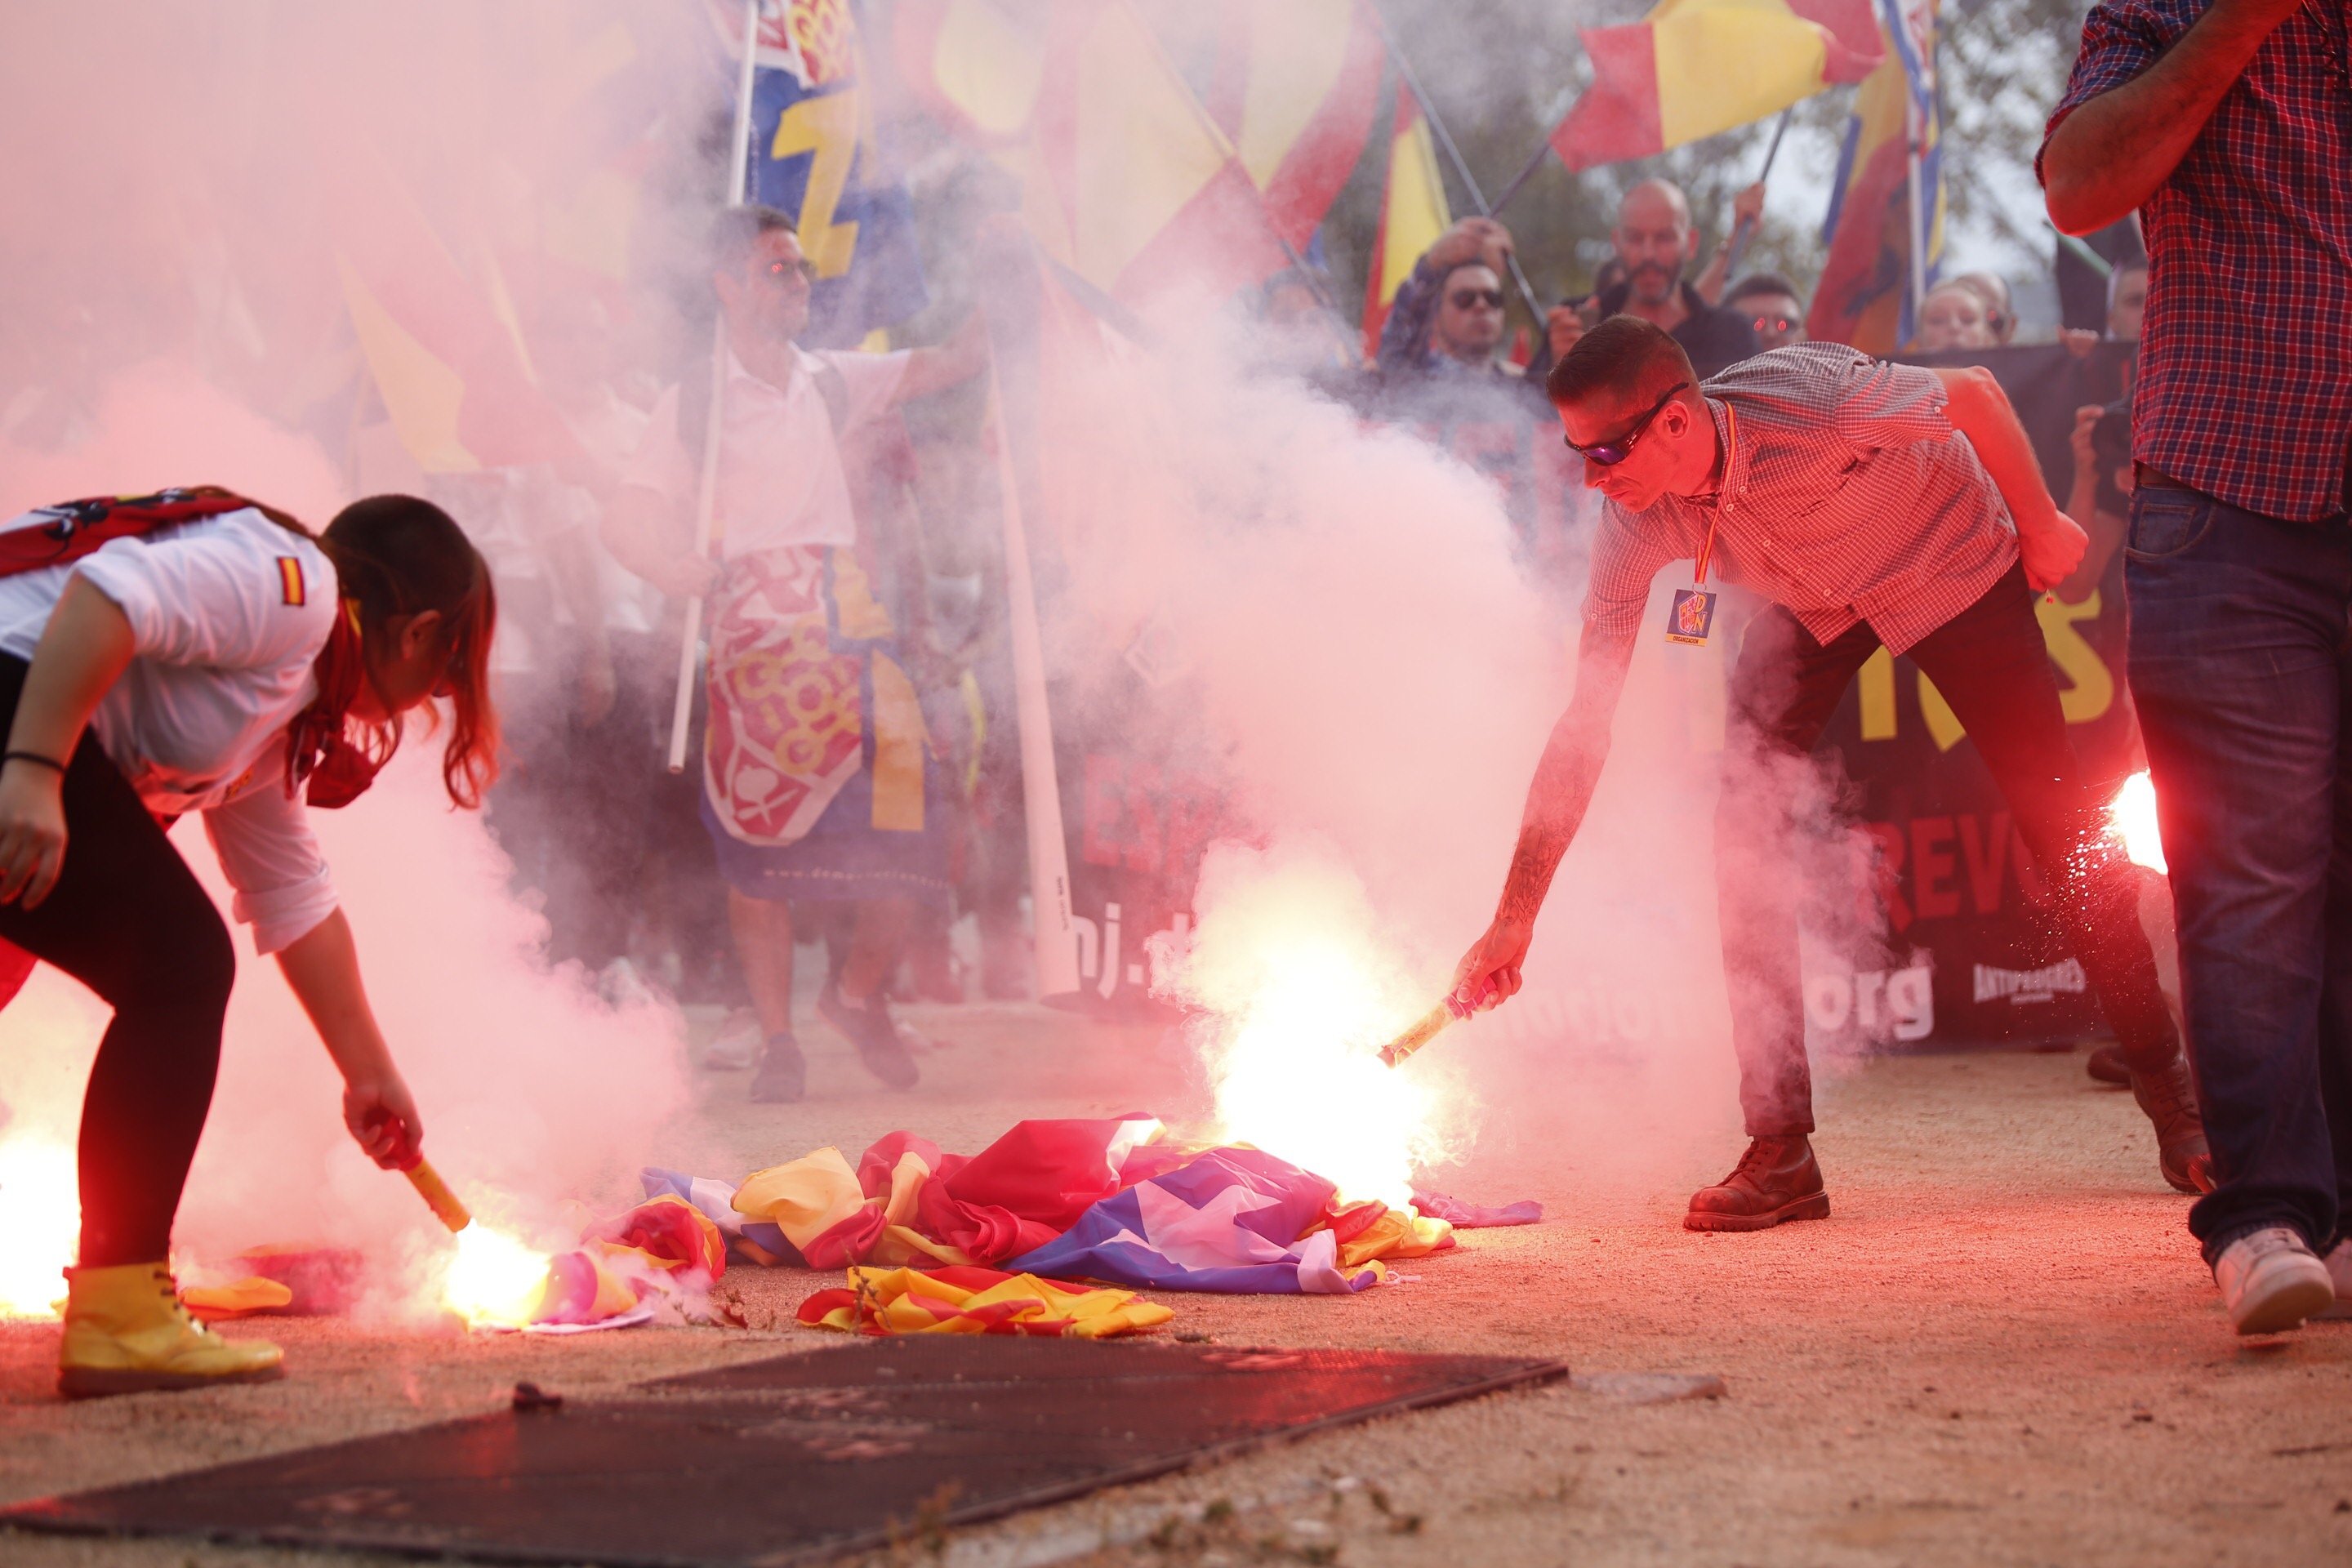 Autoritzada una manifestació ultra a Manresa tot i el 'no' de l'Ajuntament